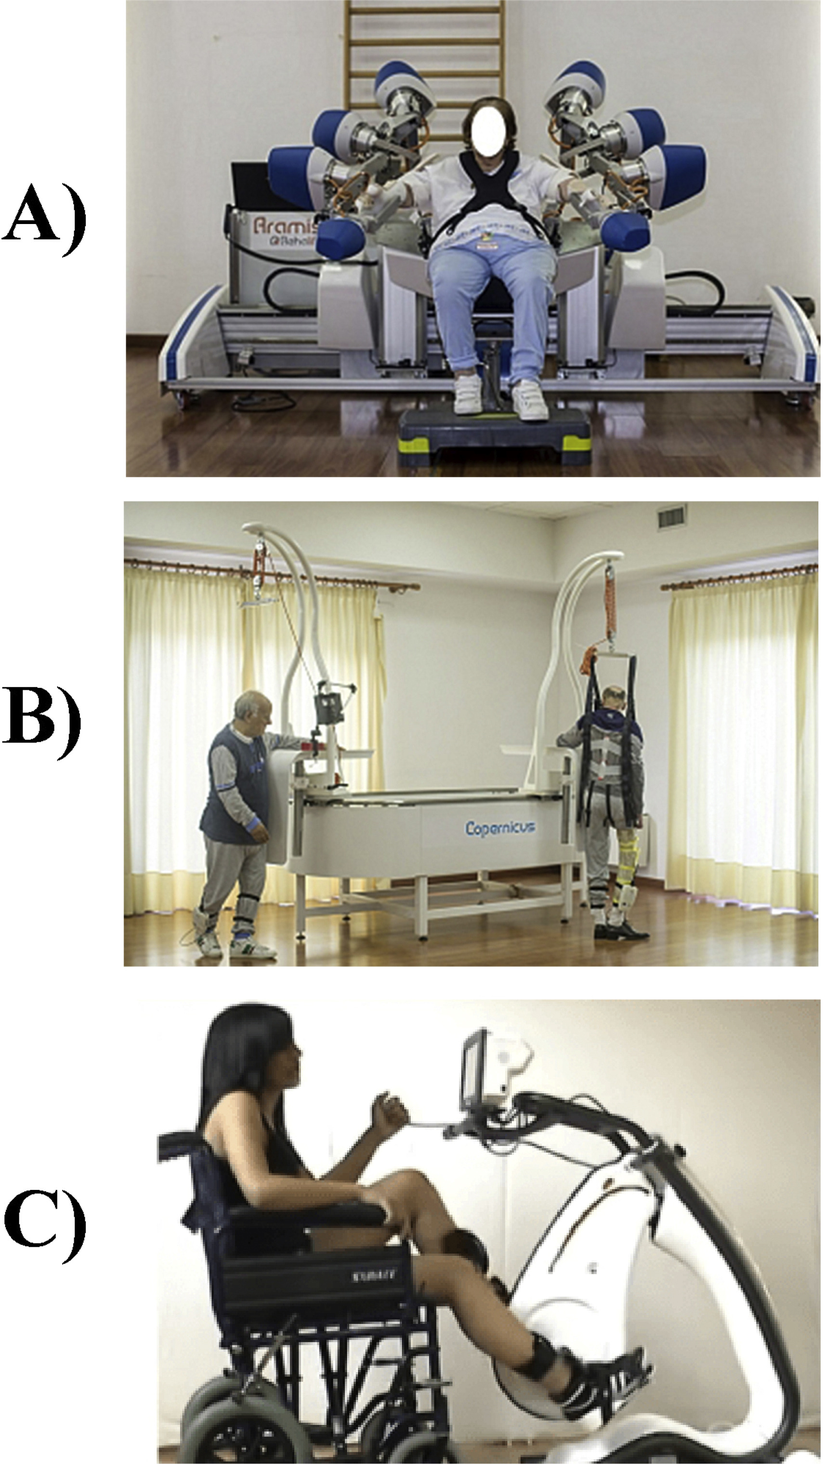 Şekil 3: İnme hastaları için entegre rehabilitasyon sistemi (IRSS) için kullanılan ve tüm vücudun iyileşmesini sağlayan üç robotik cihaz: A) ARAMIS; B) Copernicus; C) Pegaso